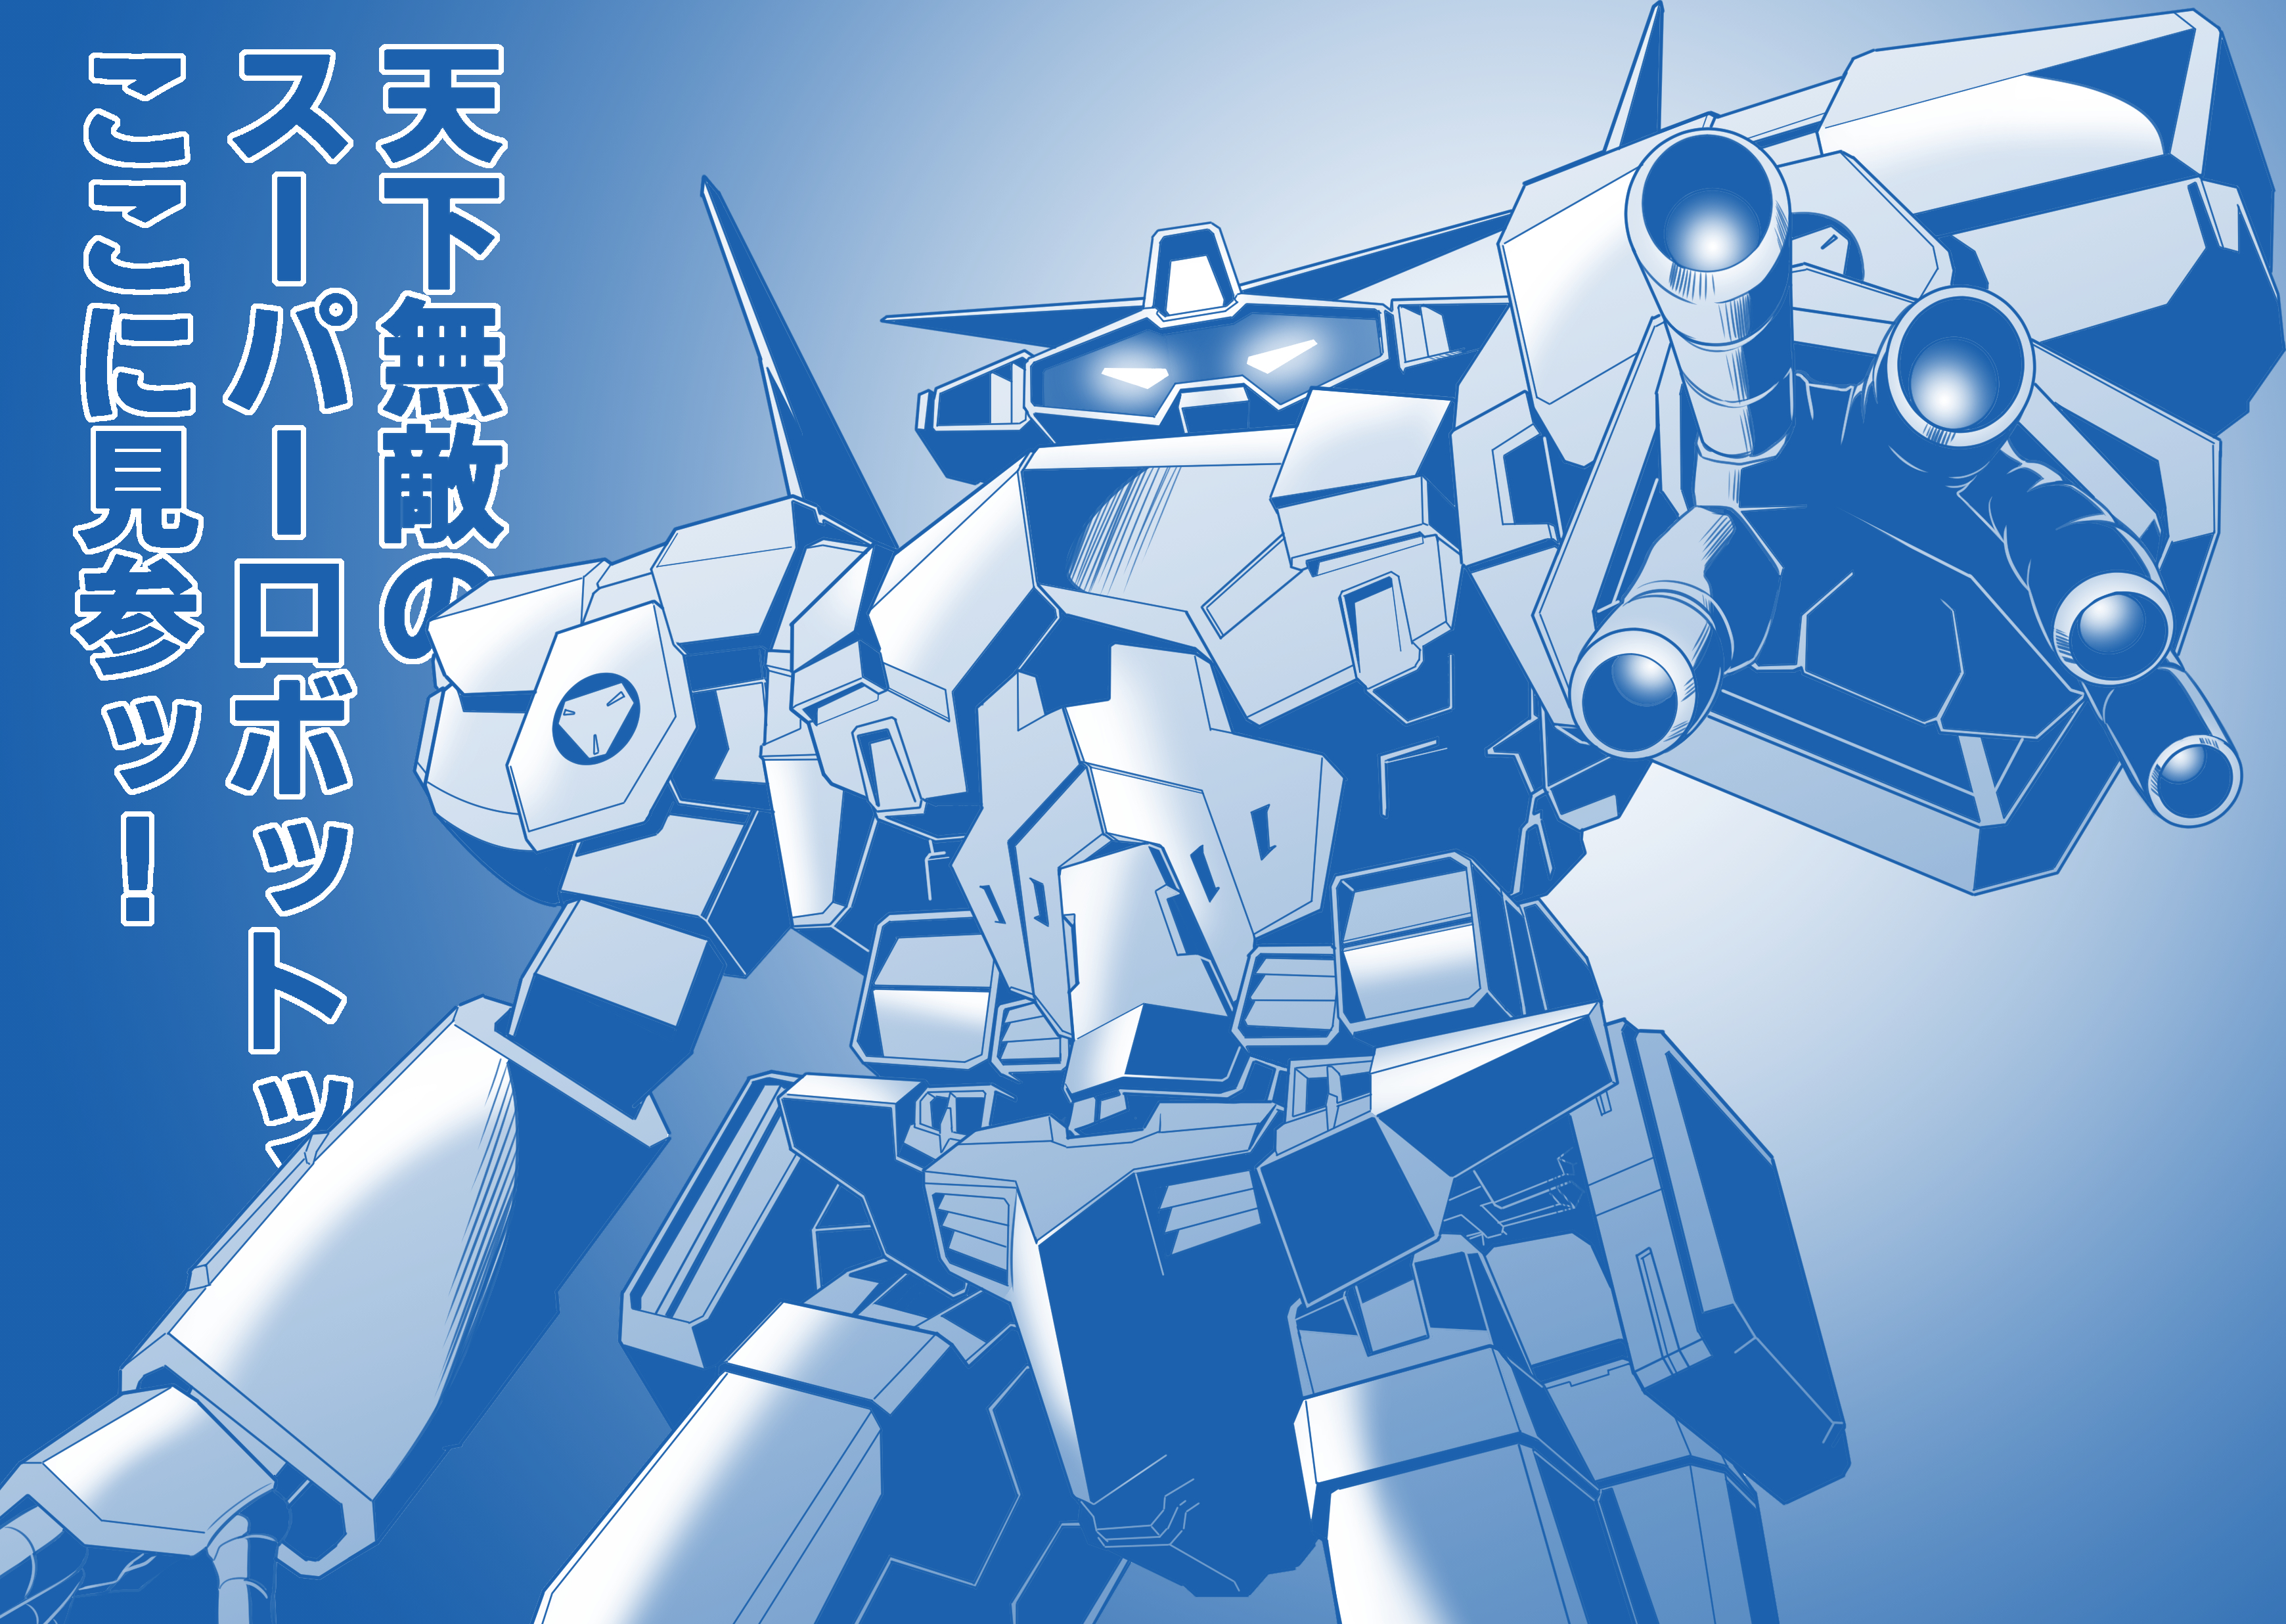 Anime 3480x2472 anime mechs Super Robot Taisen SRX artwork digital art fan art Japanese